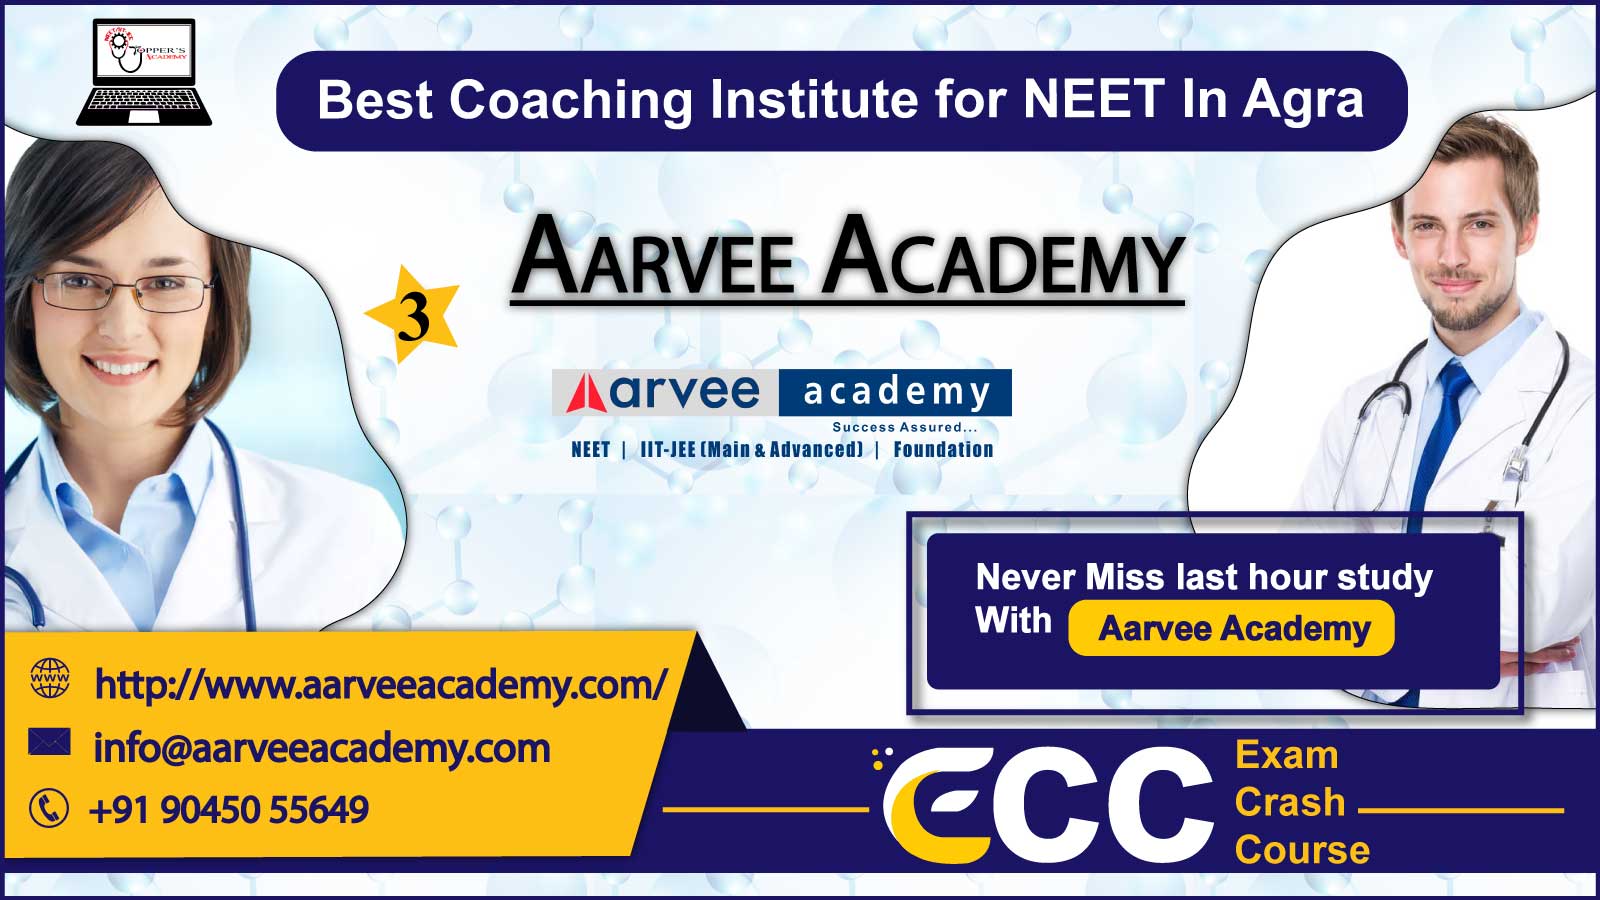 Aarvee Academy NEET Coaching In Agra